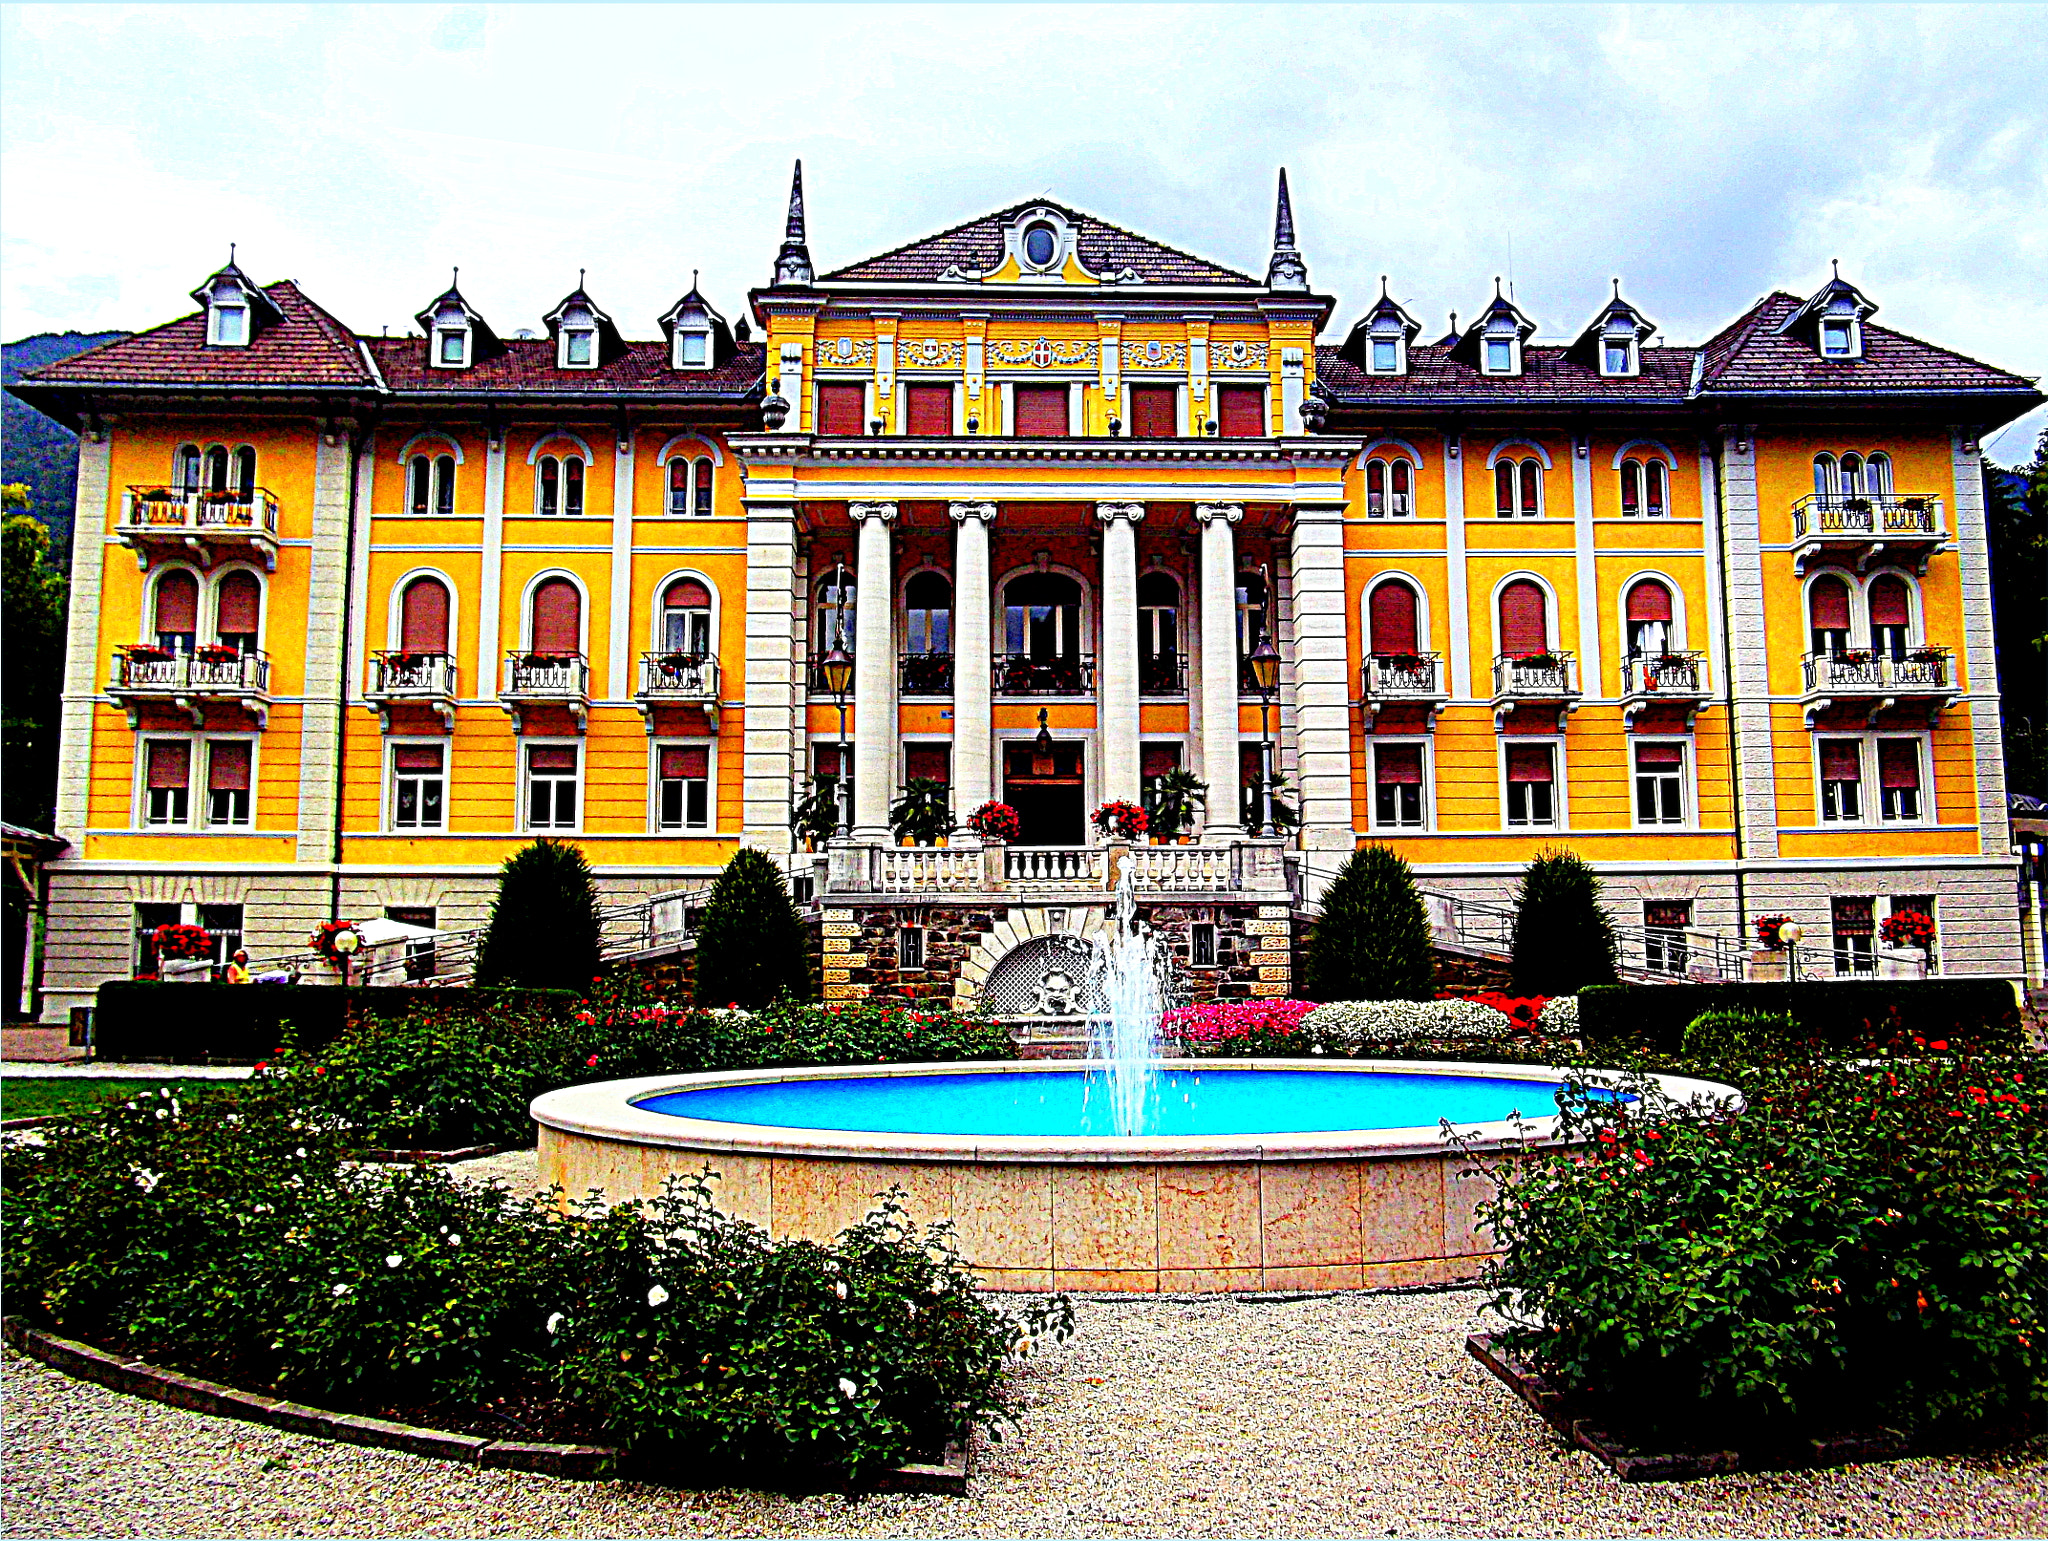 Fujifilm FinePix JX250 sample photo. In ricordo della principessa "sissi" d'asburgo, ora è...il grand hotel imperial in tutto il suo... photography